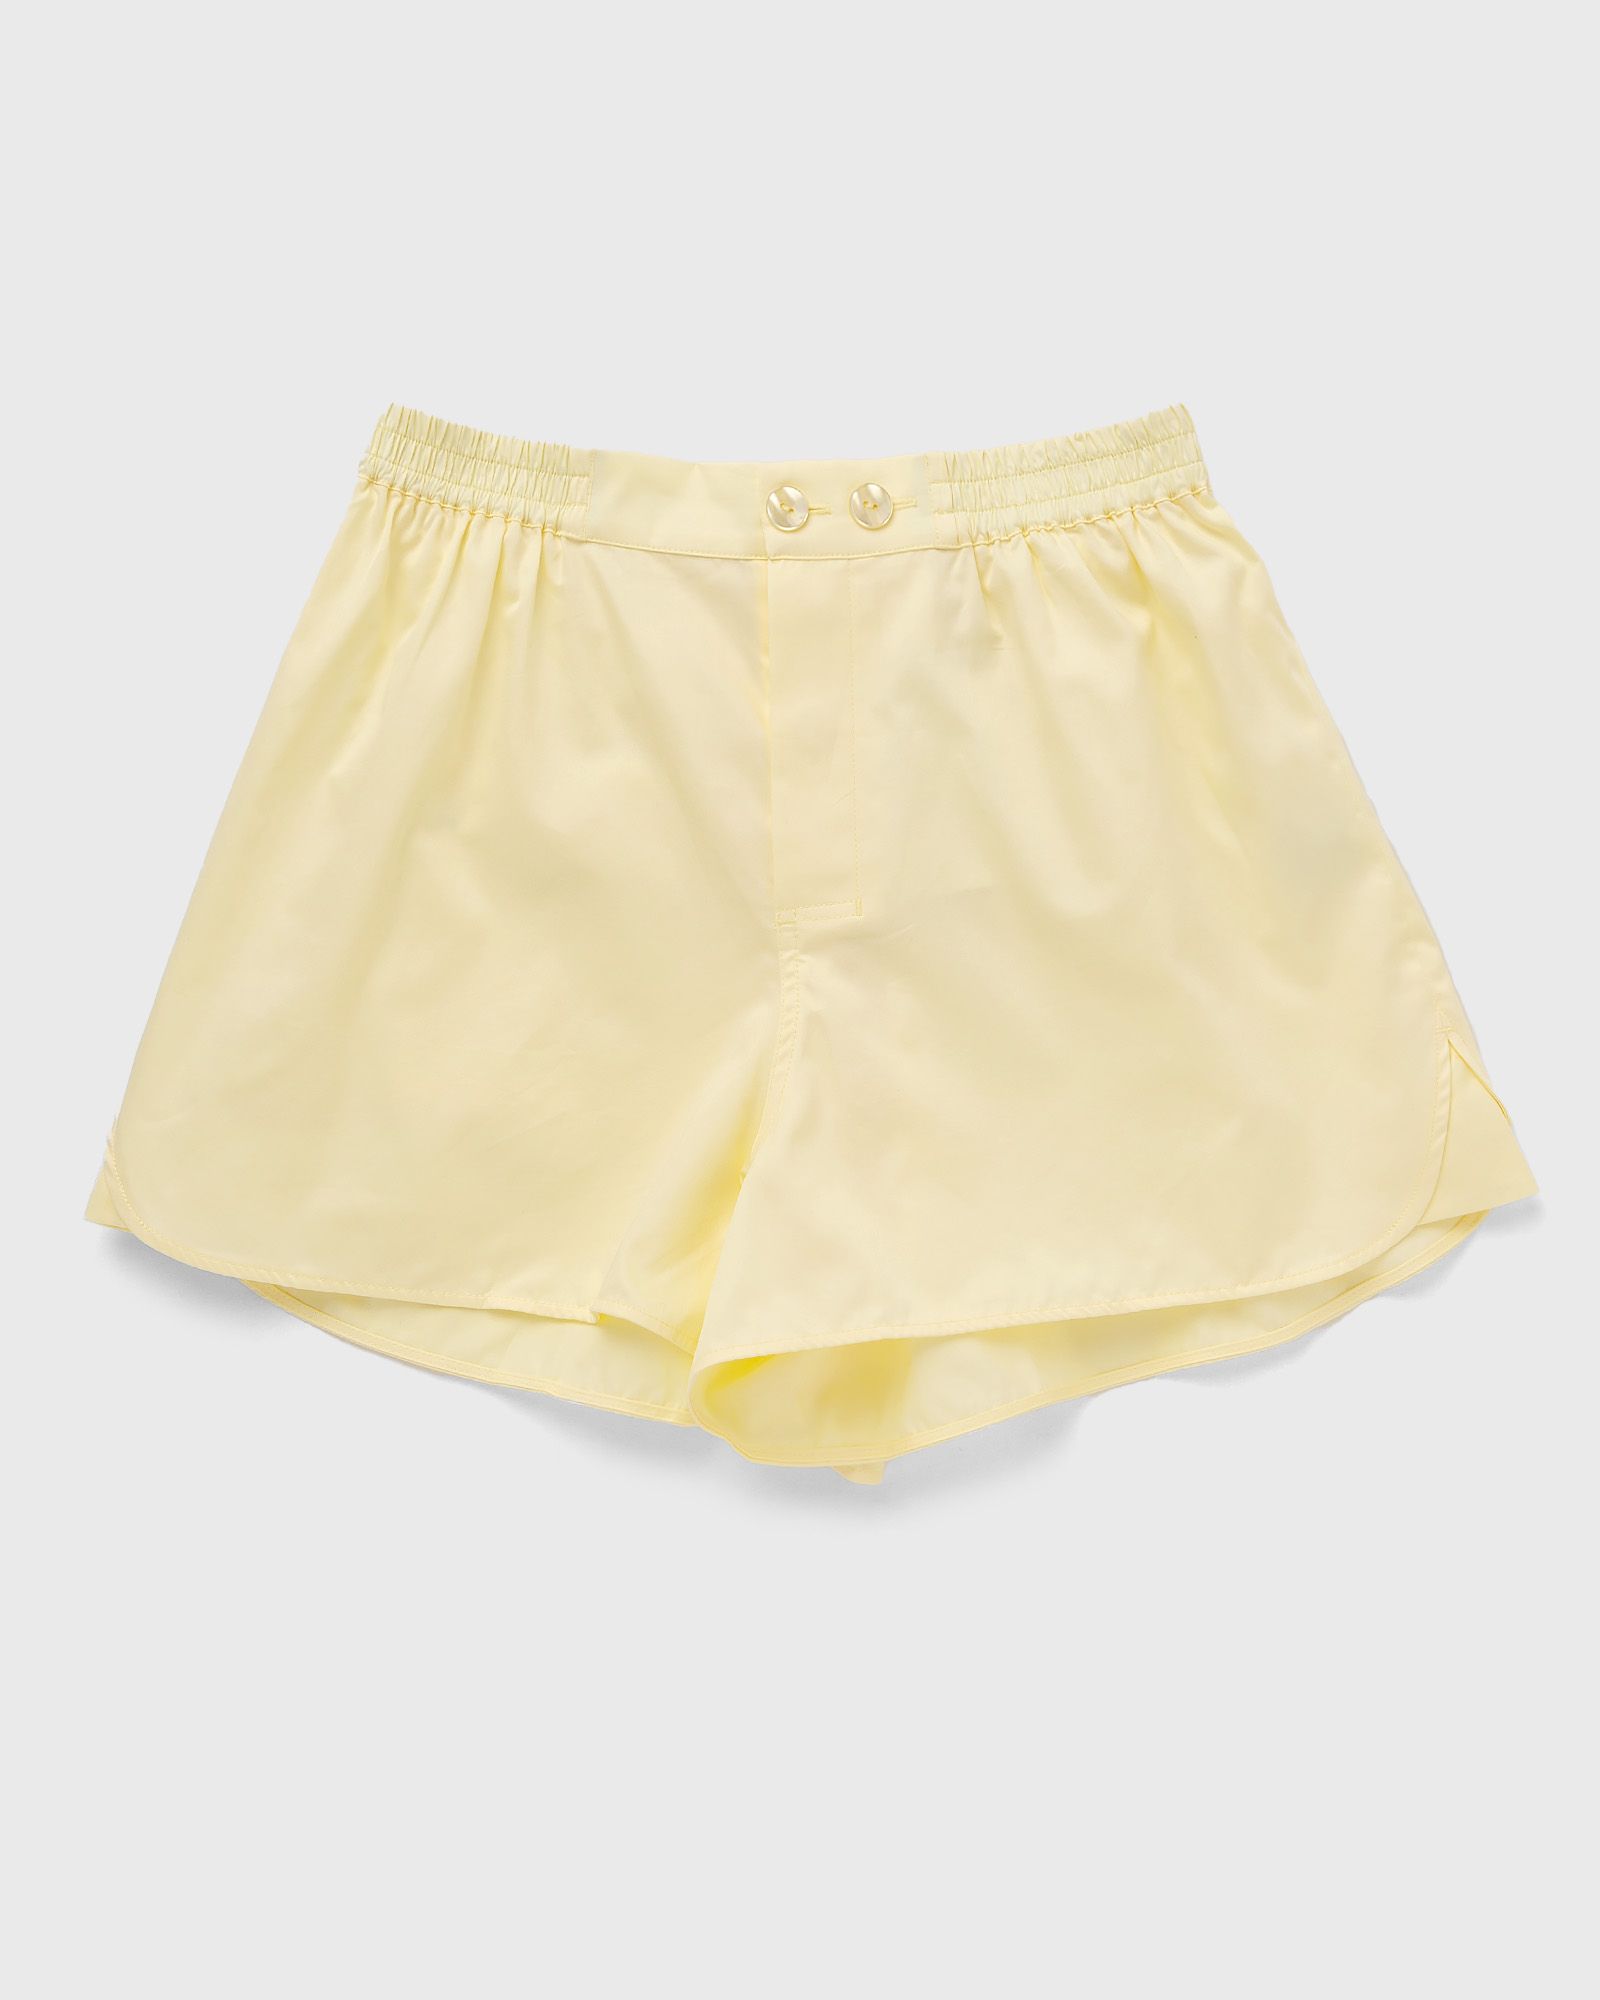 HAY Outline Pyjama Shorts men Sleep- & Loungewear yellow in Größe:S/M von HAY